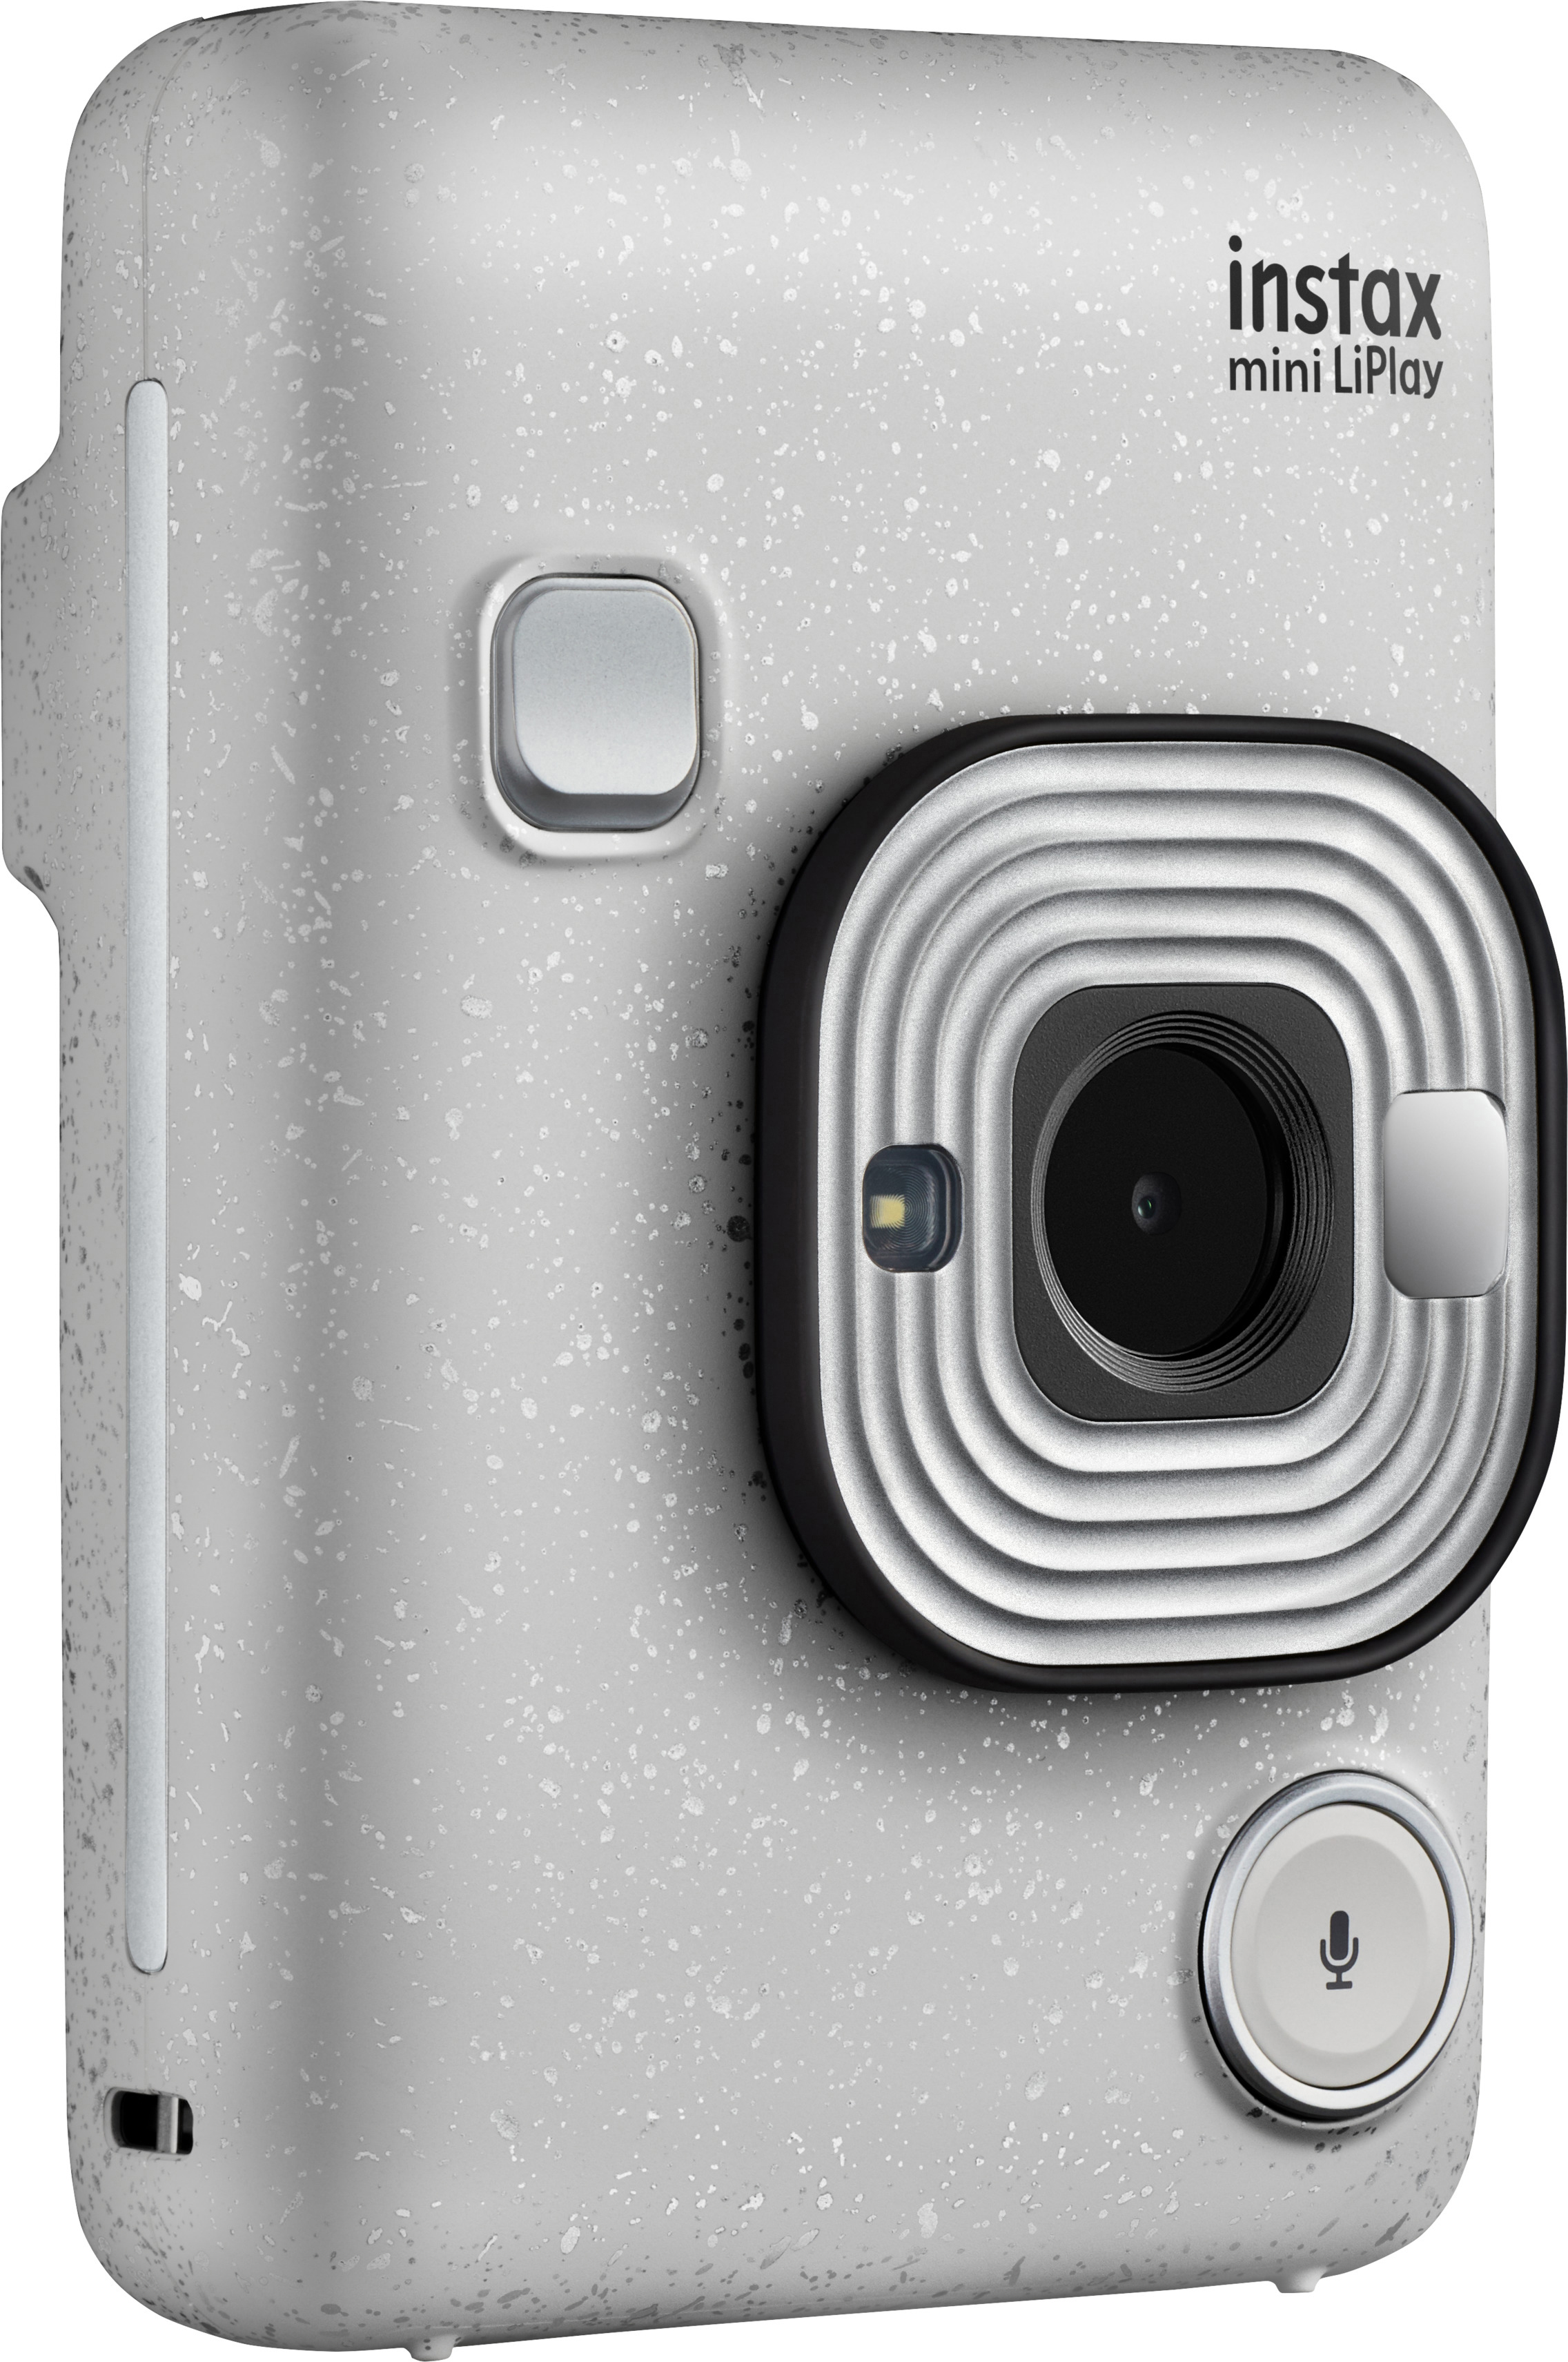 Sofortbildkamera, LiPlay instax White mini FUJIFILM Stone